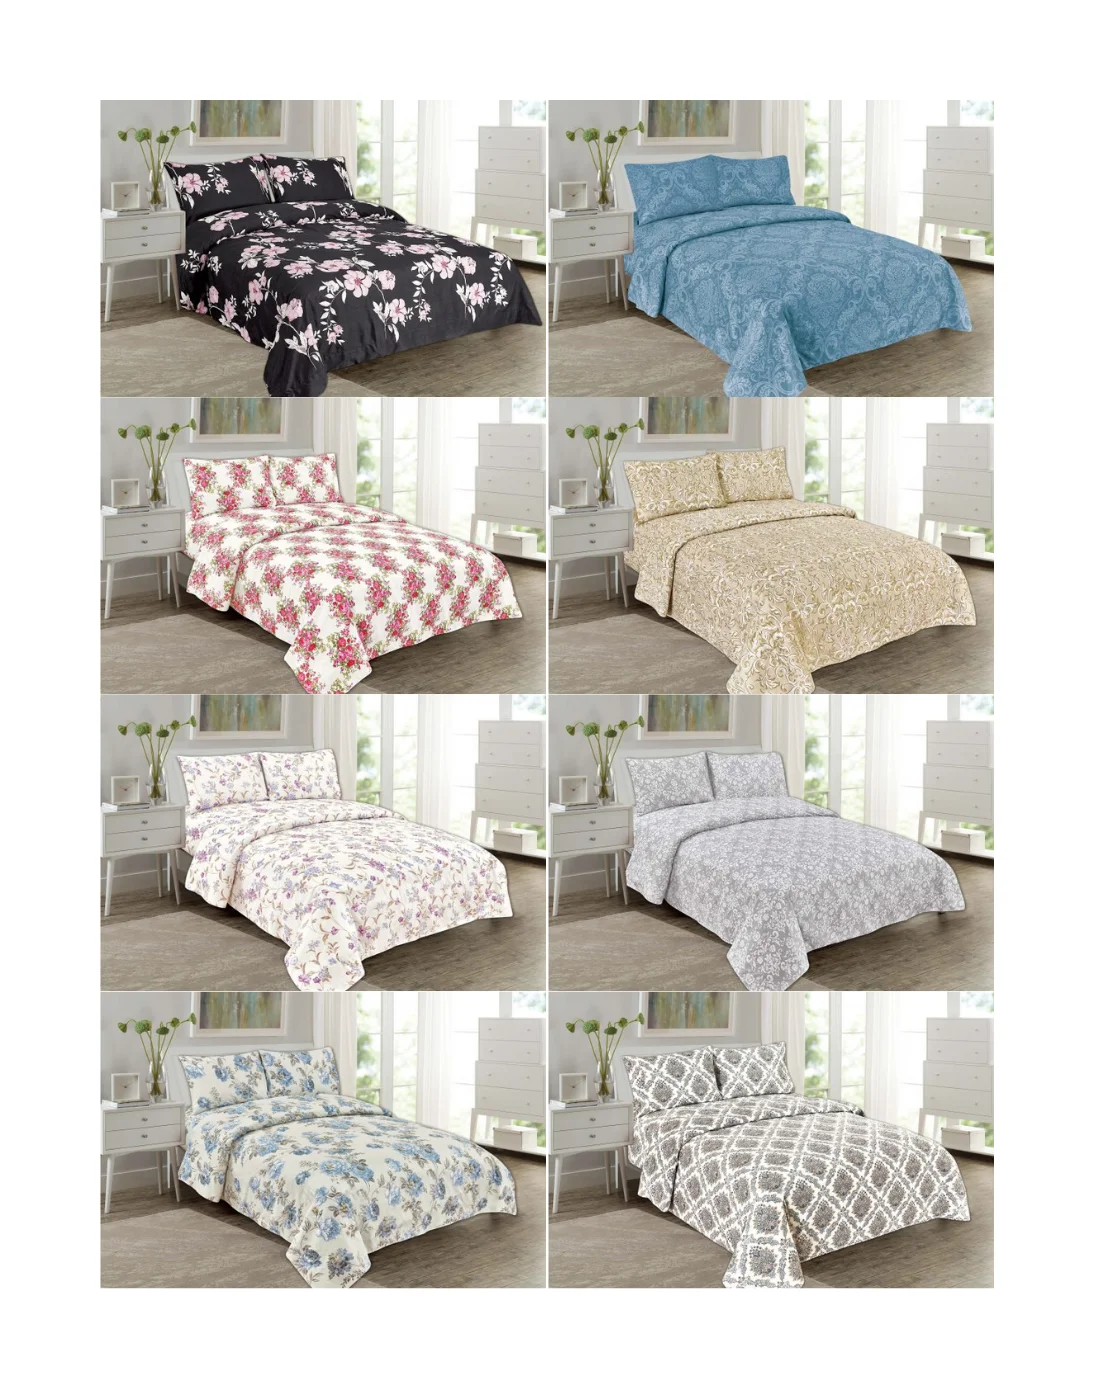 Luxury Bedding Sets Bed Sheet Wholesale Plain Color 3PCS White